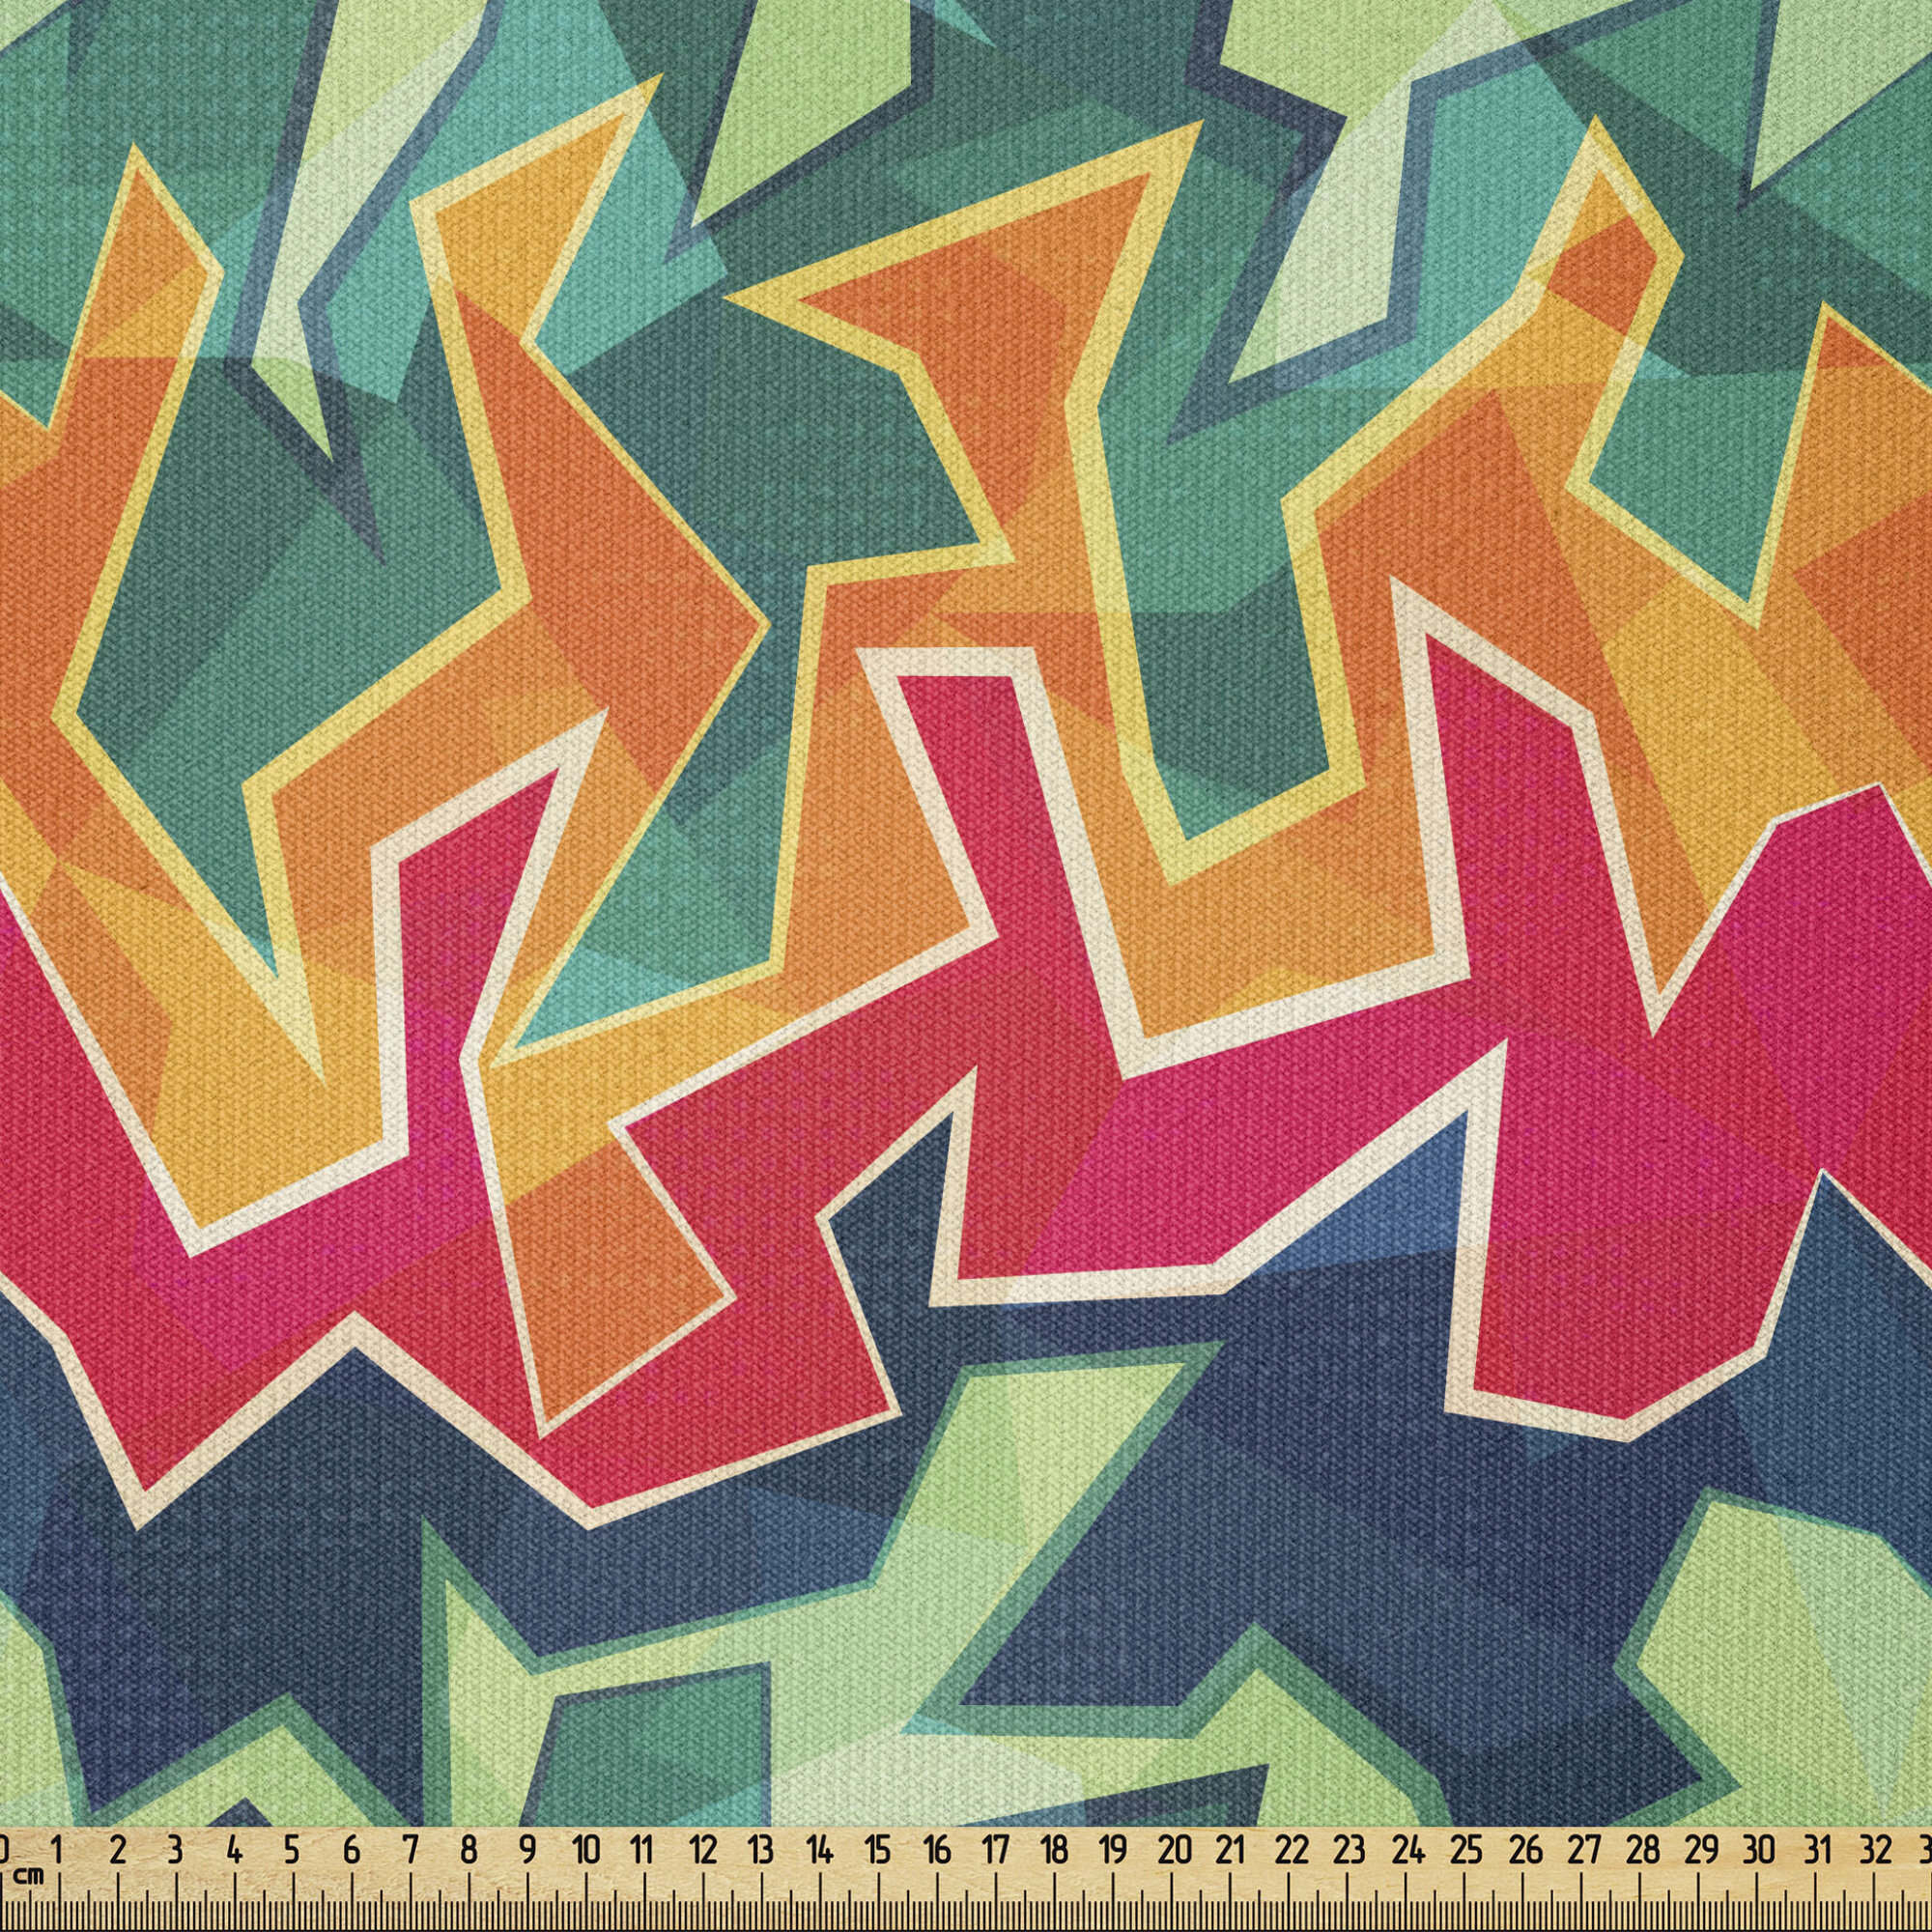 simple graffiti patterns